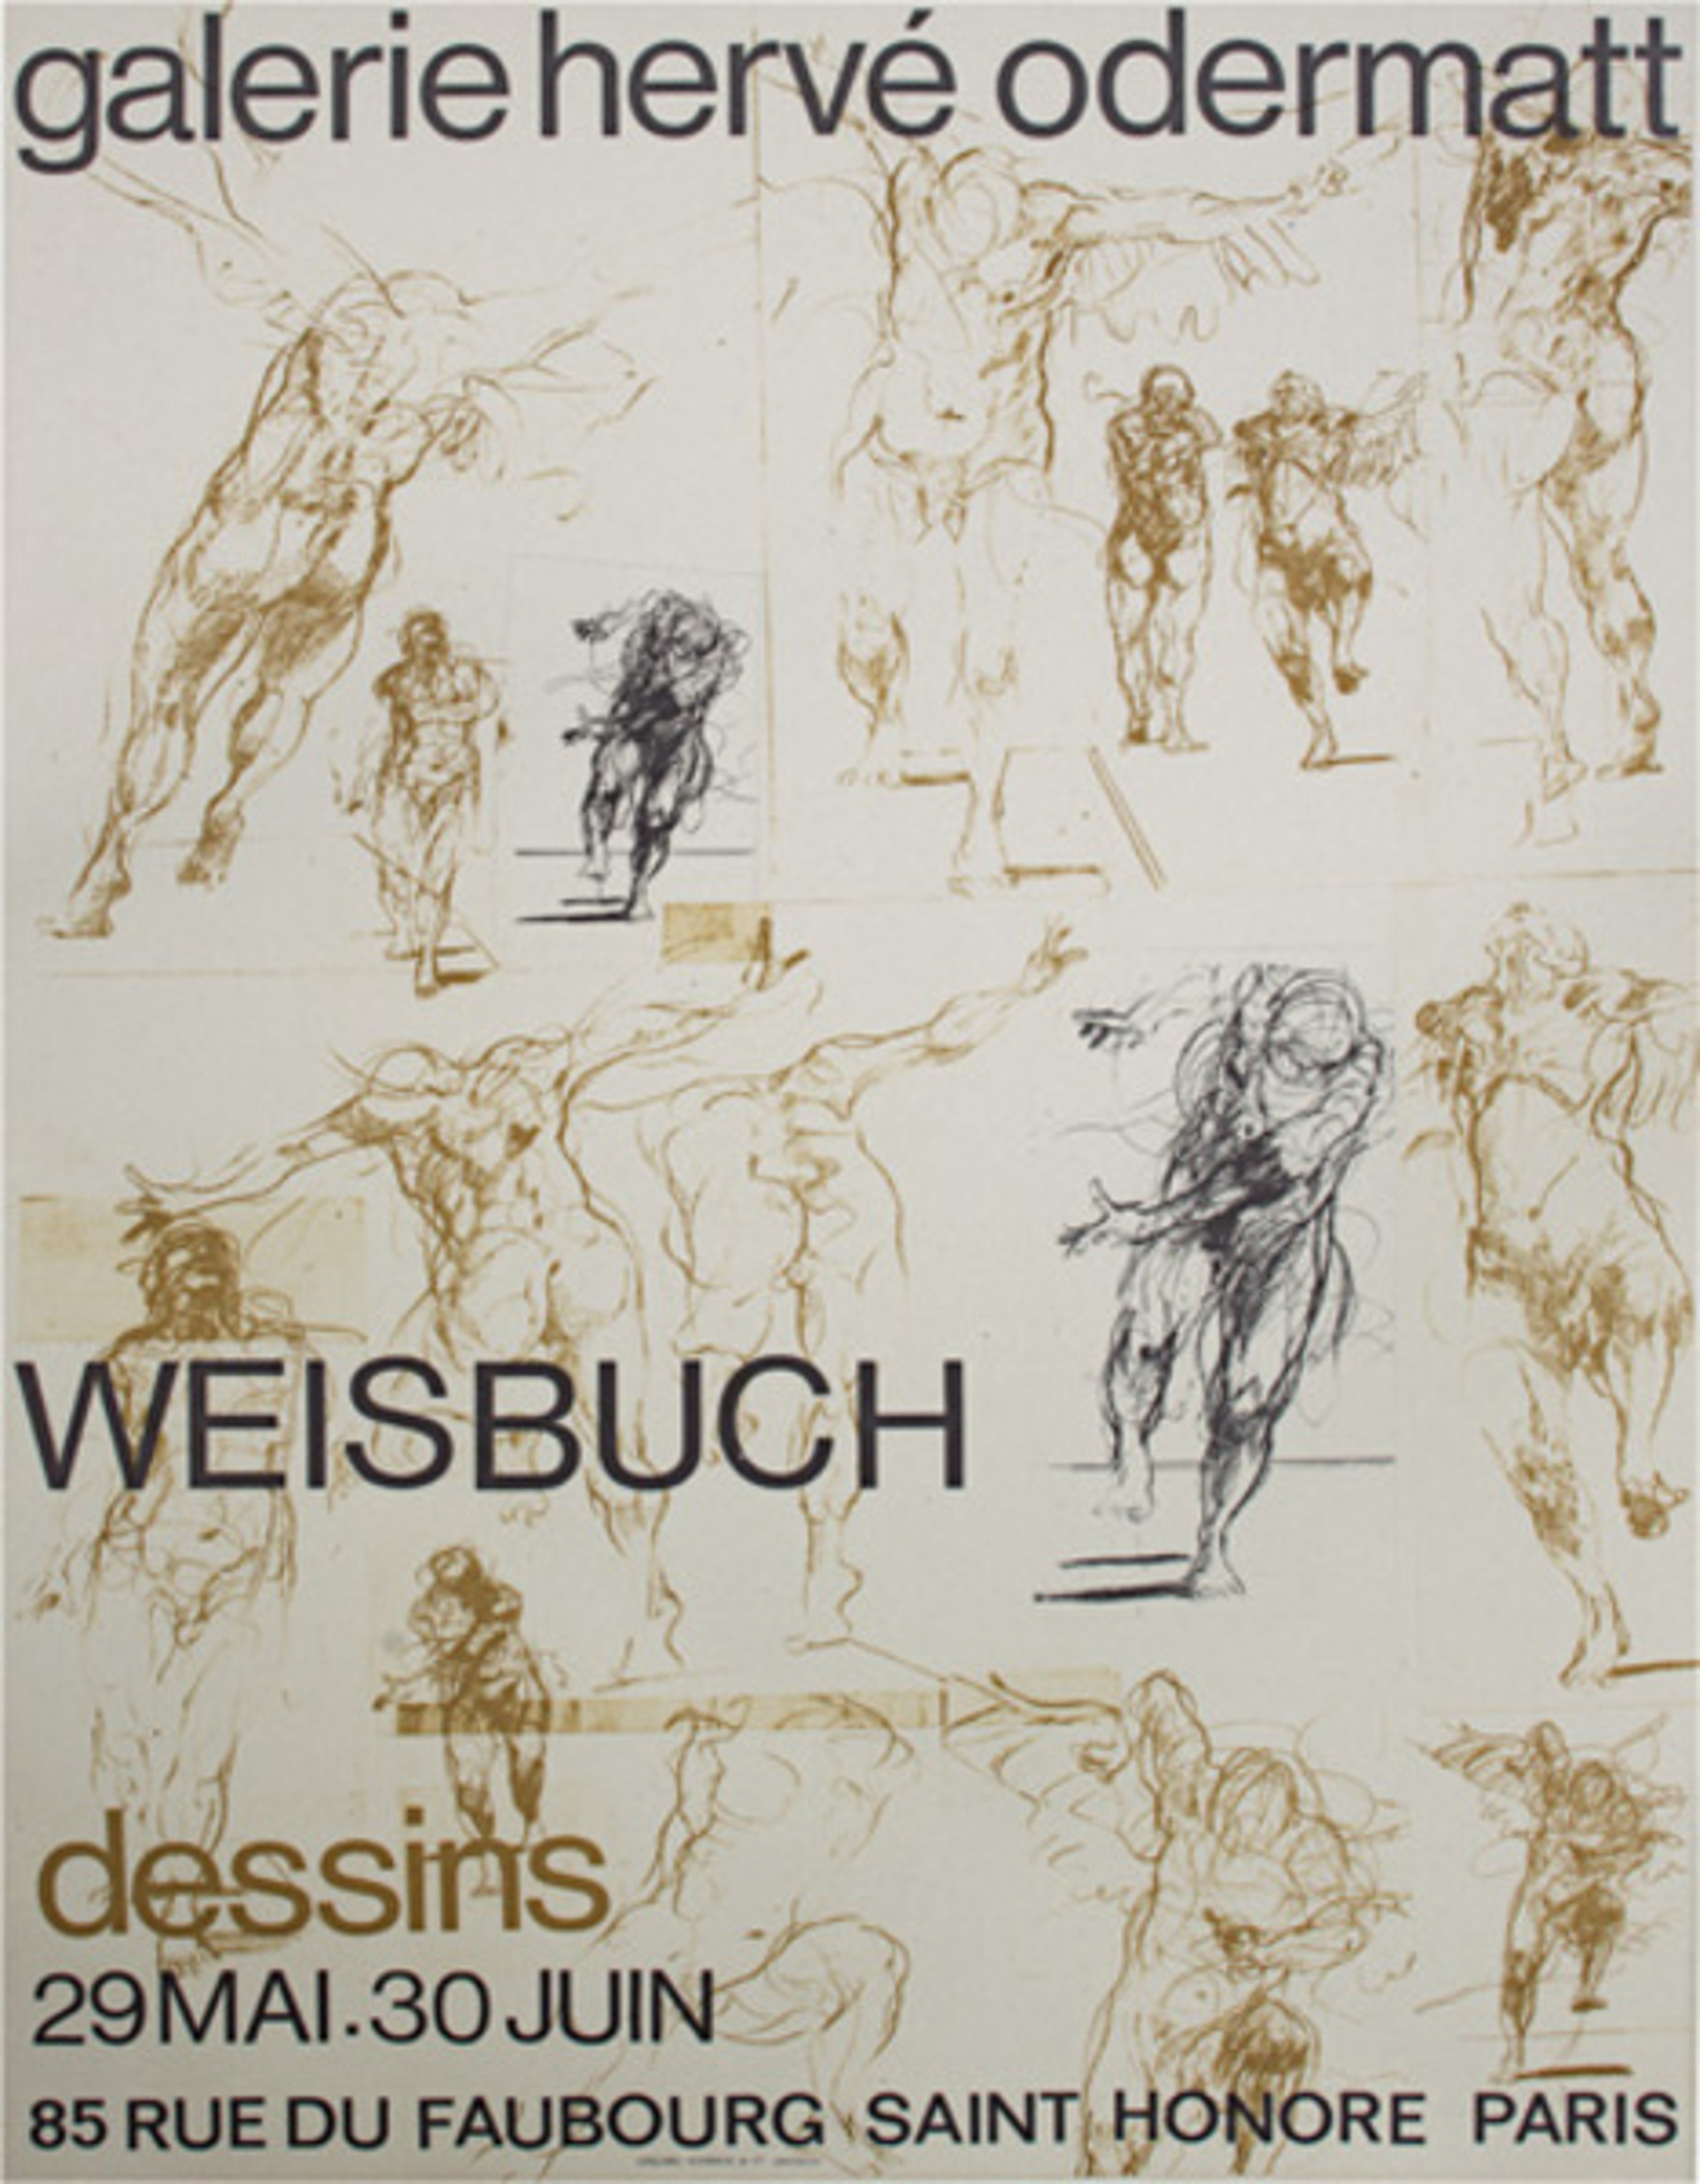 Weisbuch dessins, (galerie herve odermatt) by Claude Weisbuch